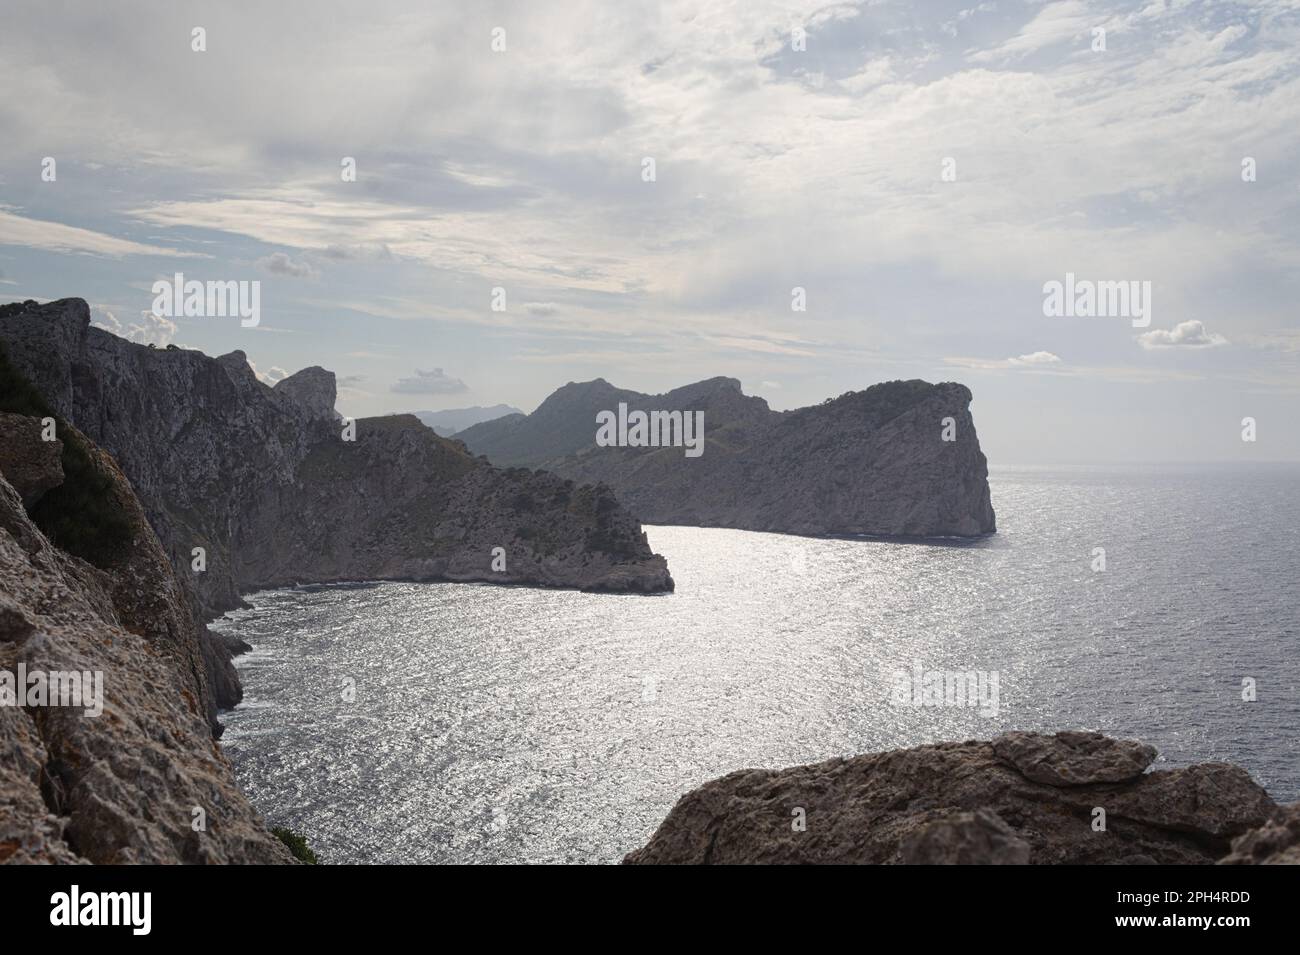 Die atemberaubende Felsenküste von Formentor auf Mallorca - ein unvergessliches Reiseziel. Stock Photo